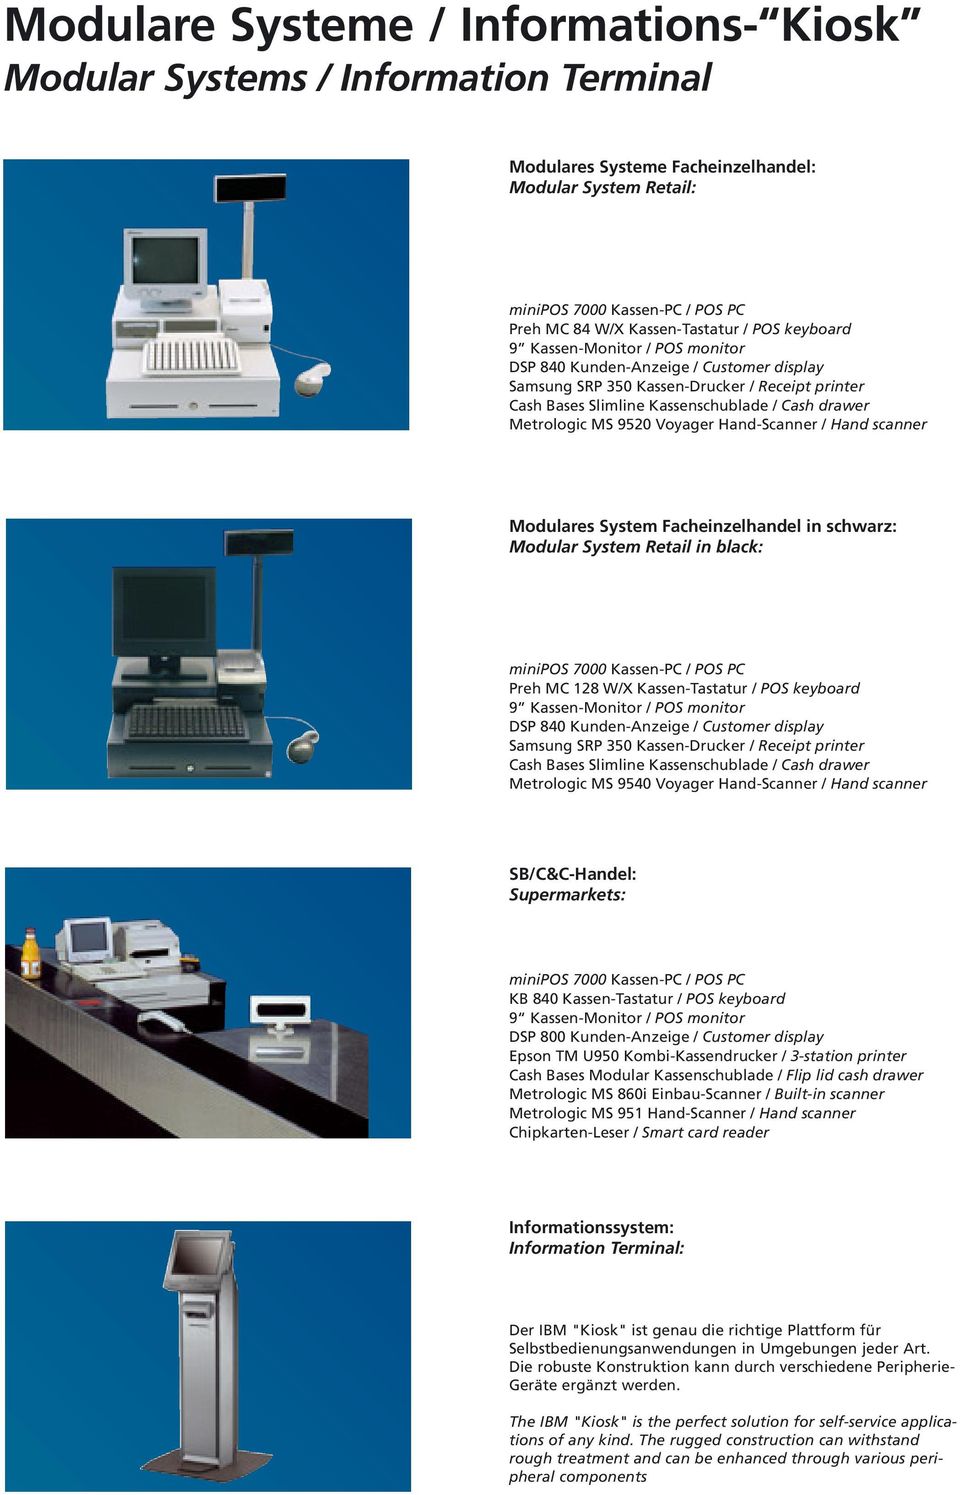 Voyager Hand-Scanner / Hand scanner Modulares System Facheinzelhandel in schwarz: Modular System Retail in black: minipos 7000 Kassen-PC / POS PC Preh MC 128 W/X Kassen-Tastatur / POS keyboard 9